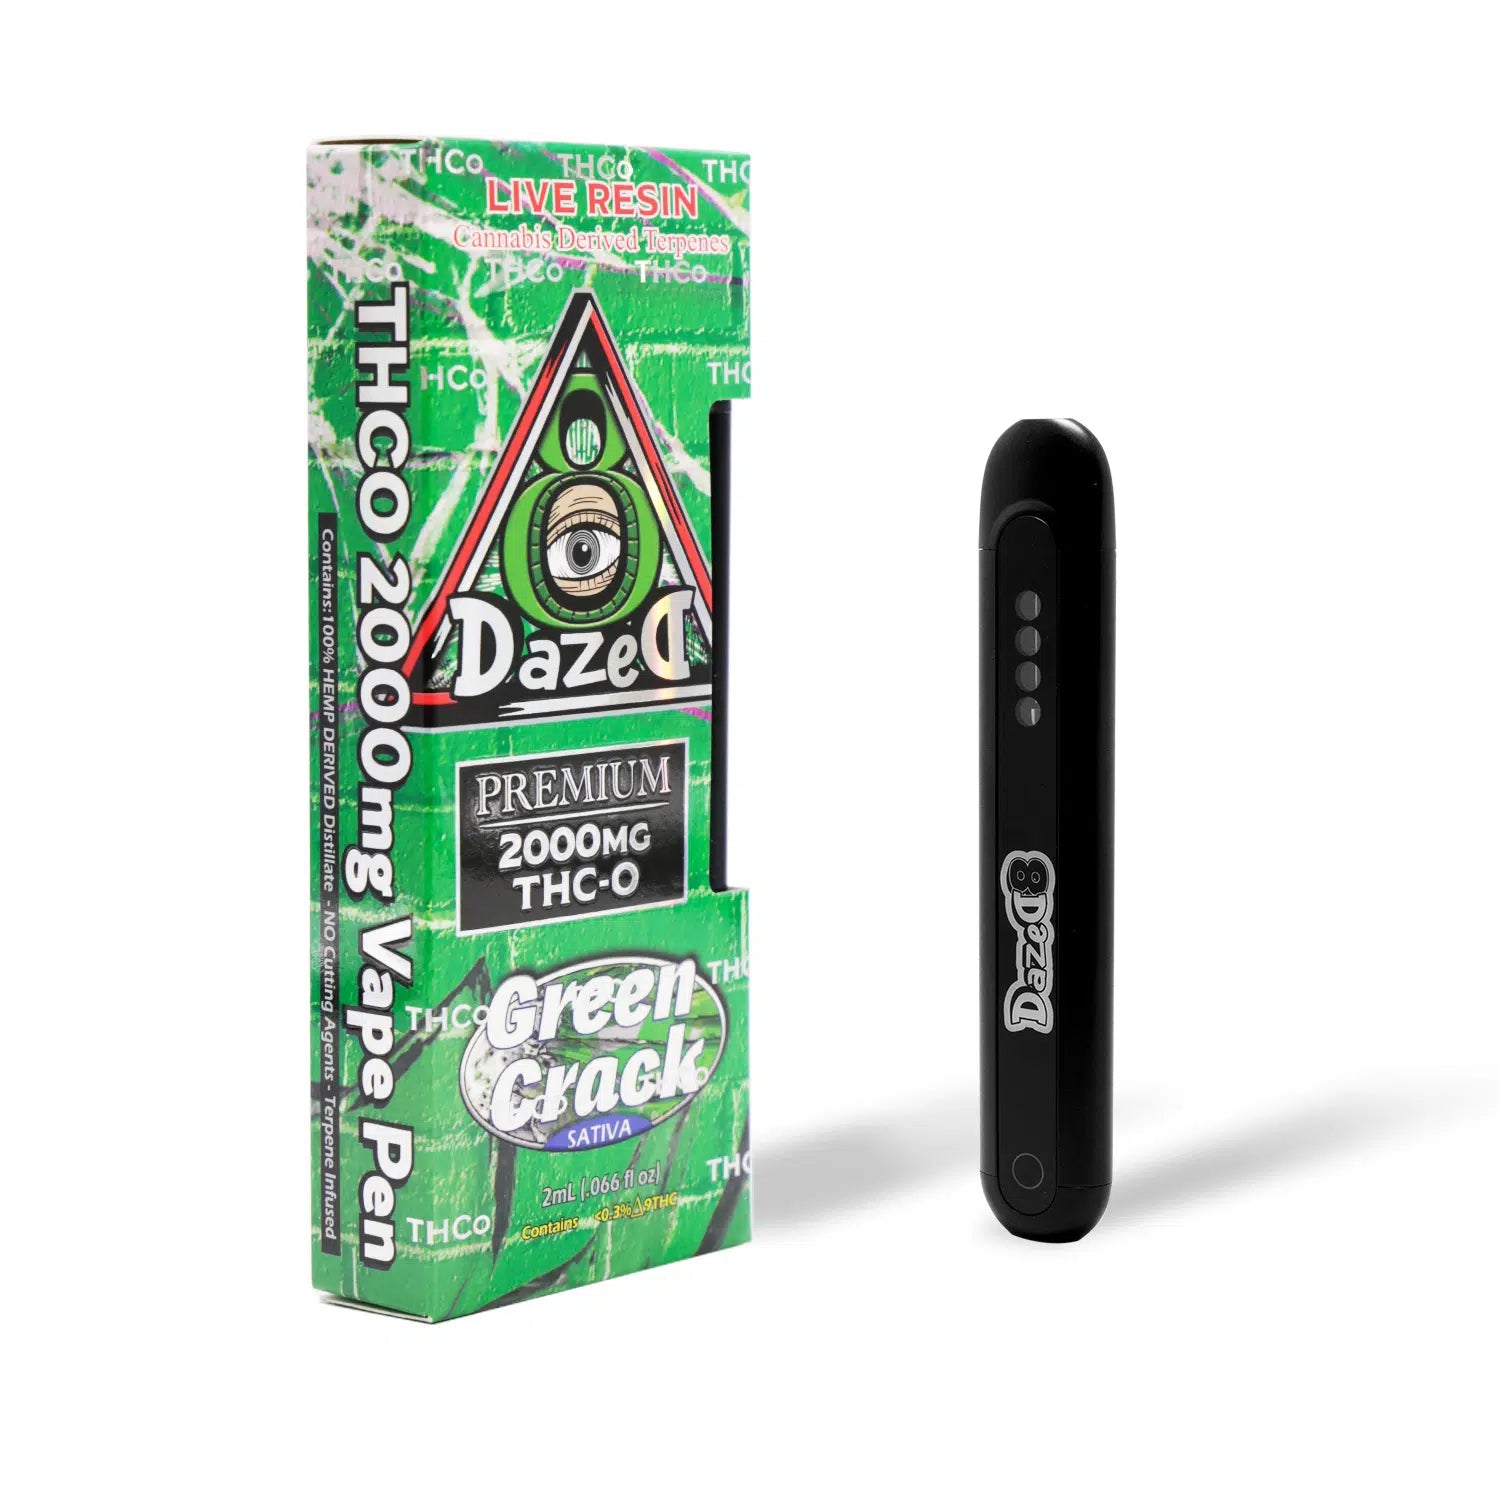 DazeD8 Green Crack Live Resin THC-O Disposable (2g) Best Price